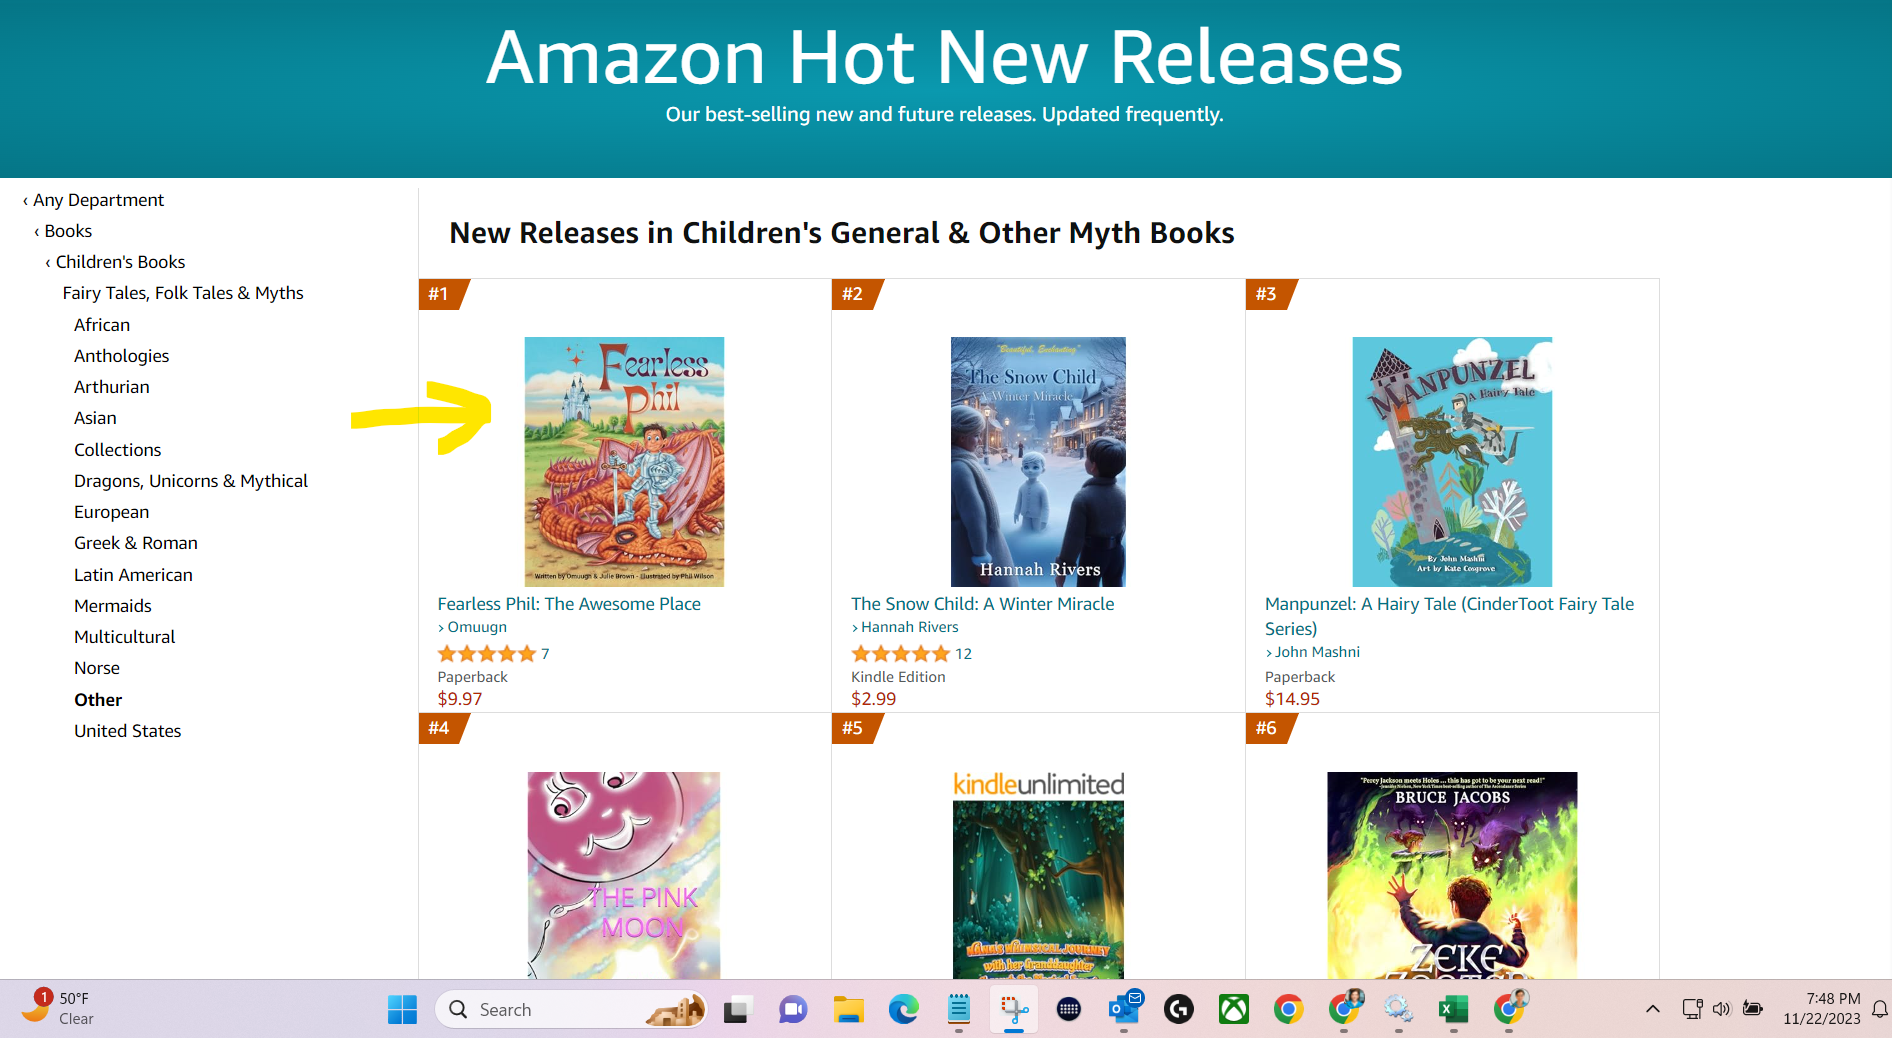 Amazon Hot New Releases 2